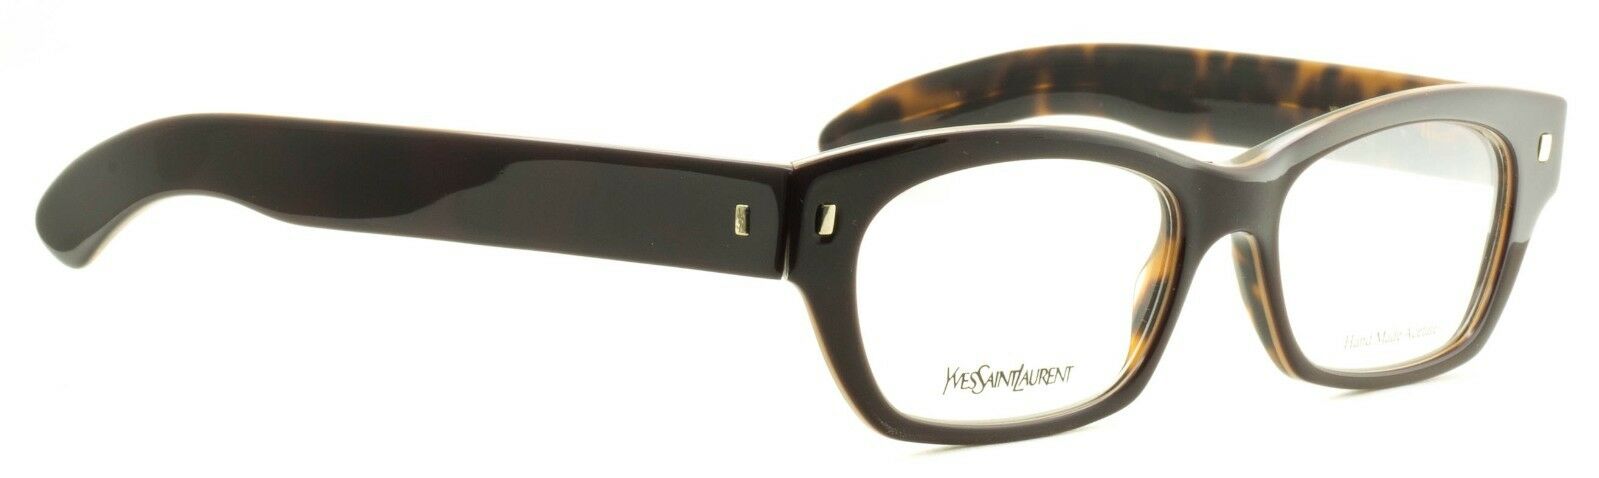 Authentic Yves Saint Laurent Glasses YSL 6334 AV3 Grey Fade 53mm Eyeglasses  RX